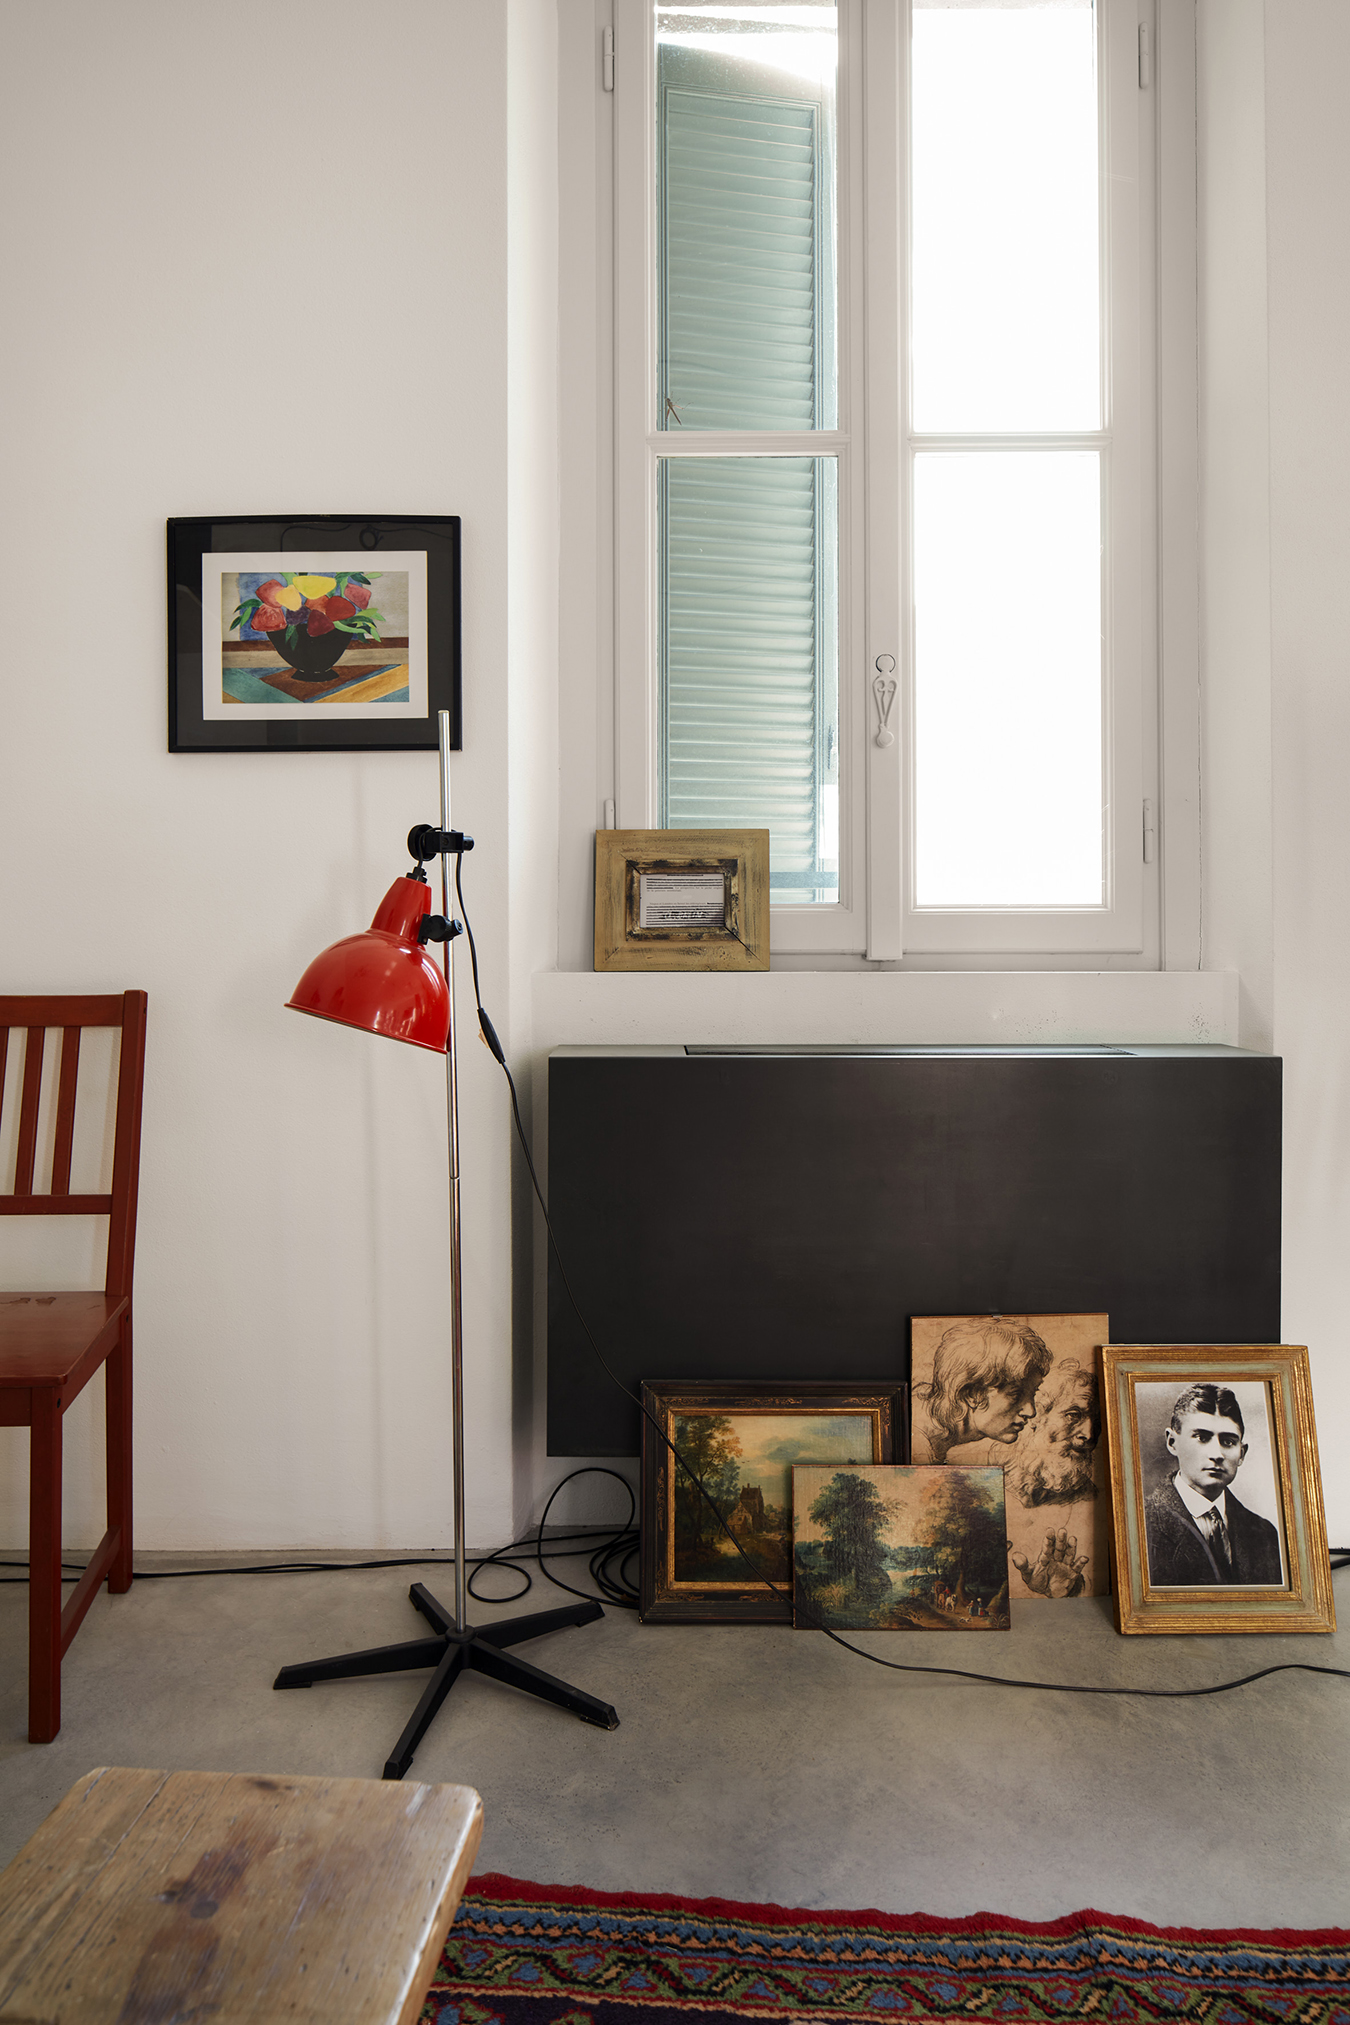 Jean-Luc Godard, “Le Studio d’Orphée”, Fondazione Prada, Milano, Foto: Agostino Osio - Alto Piano, Courtesy Fondazione Prada